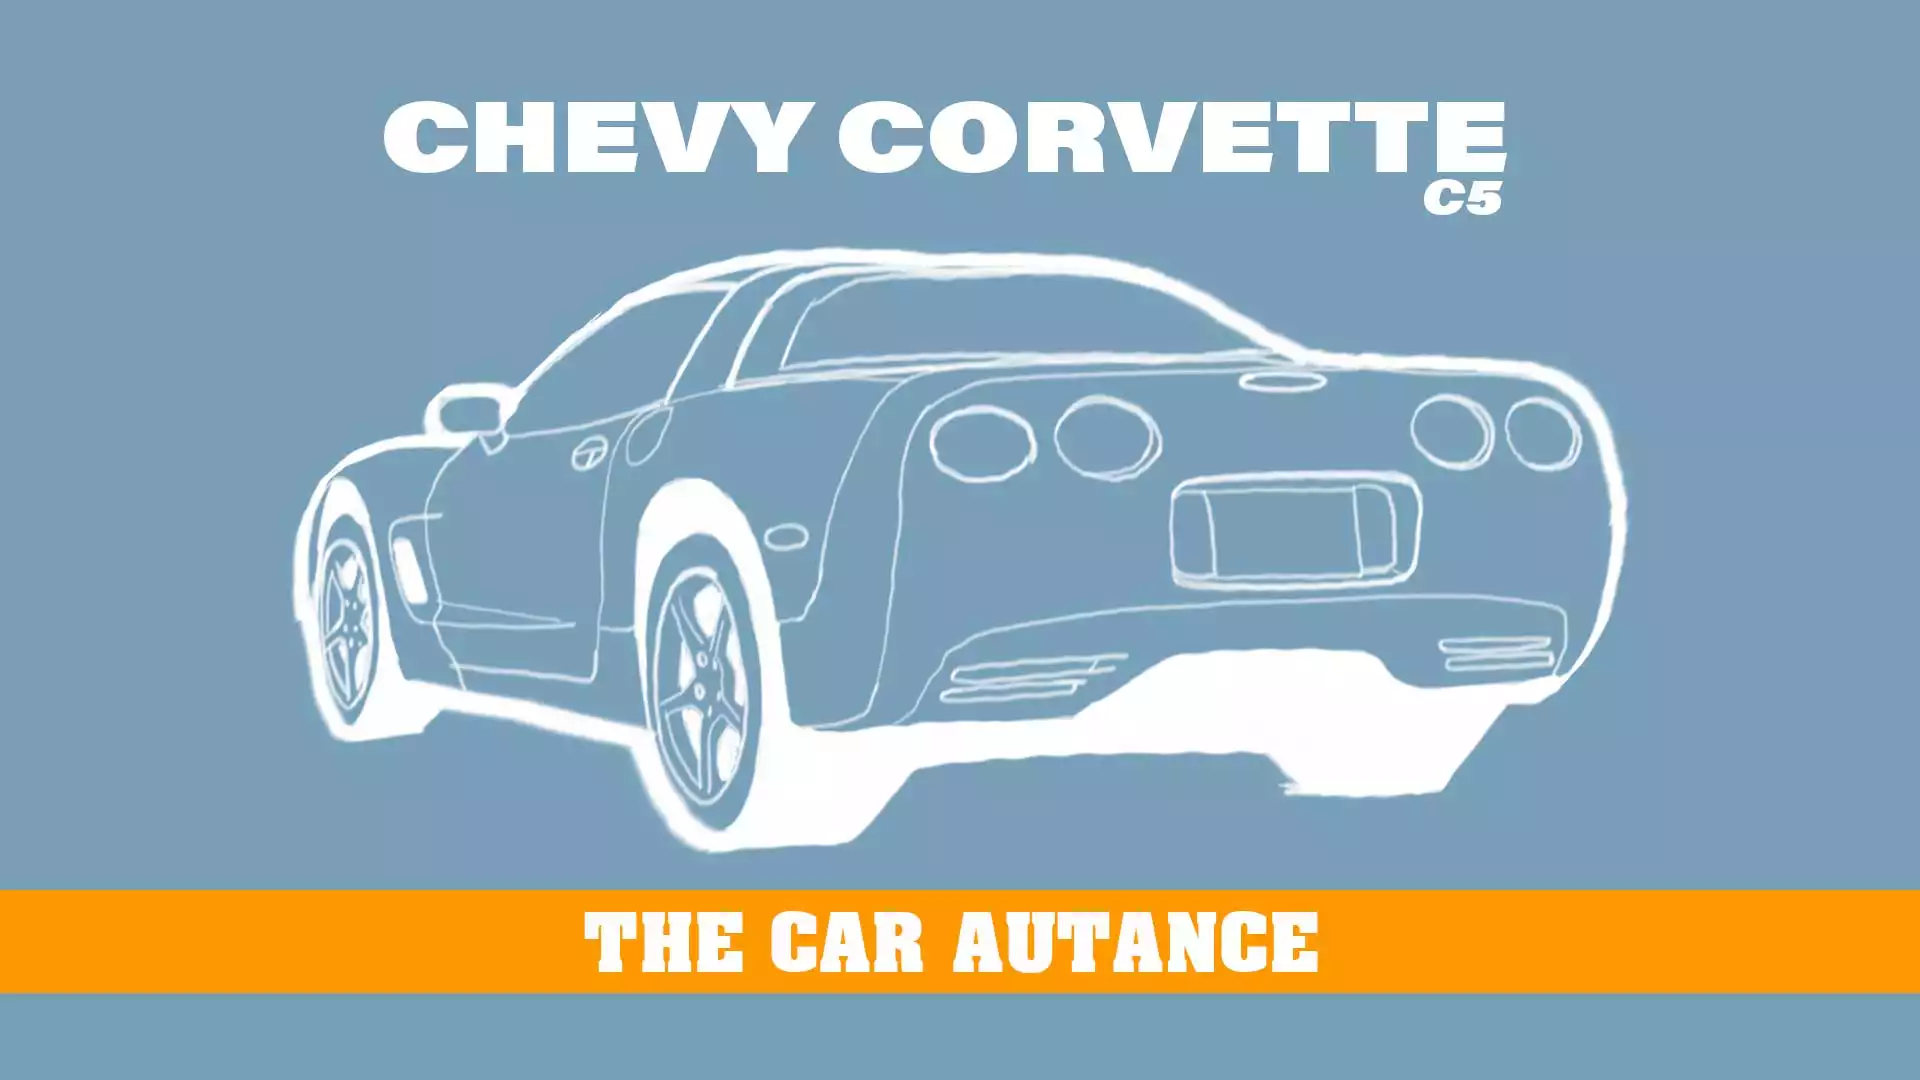 Chevrolet Corvette: The Car Autance (C5; 1997-2004)